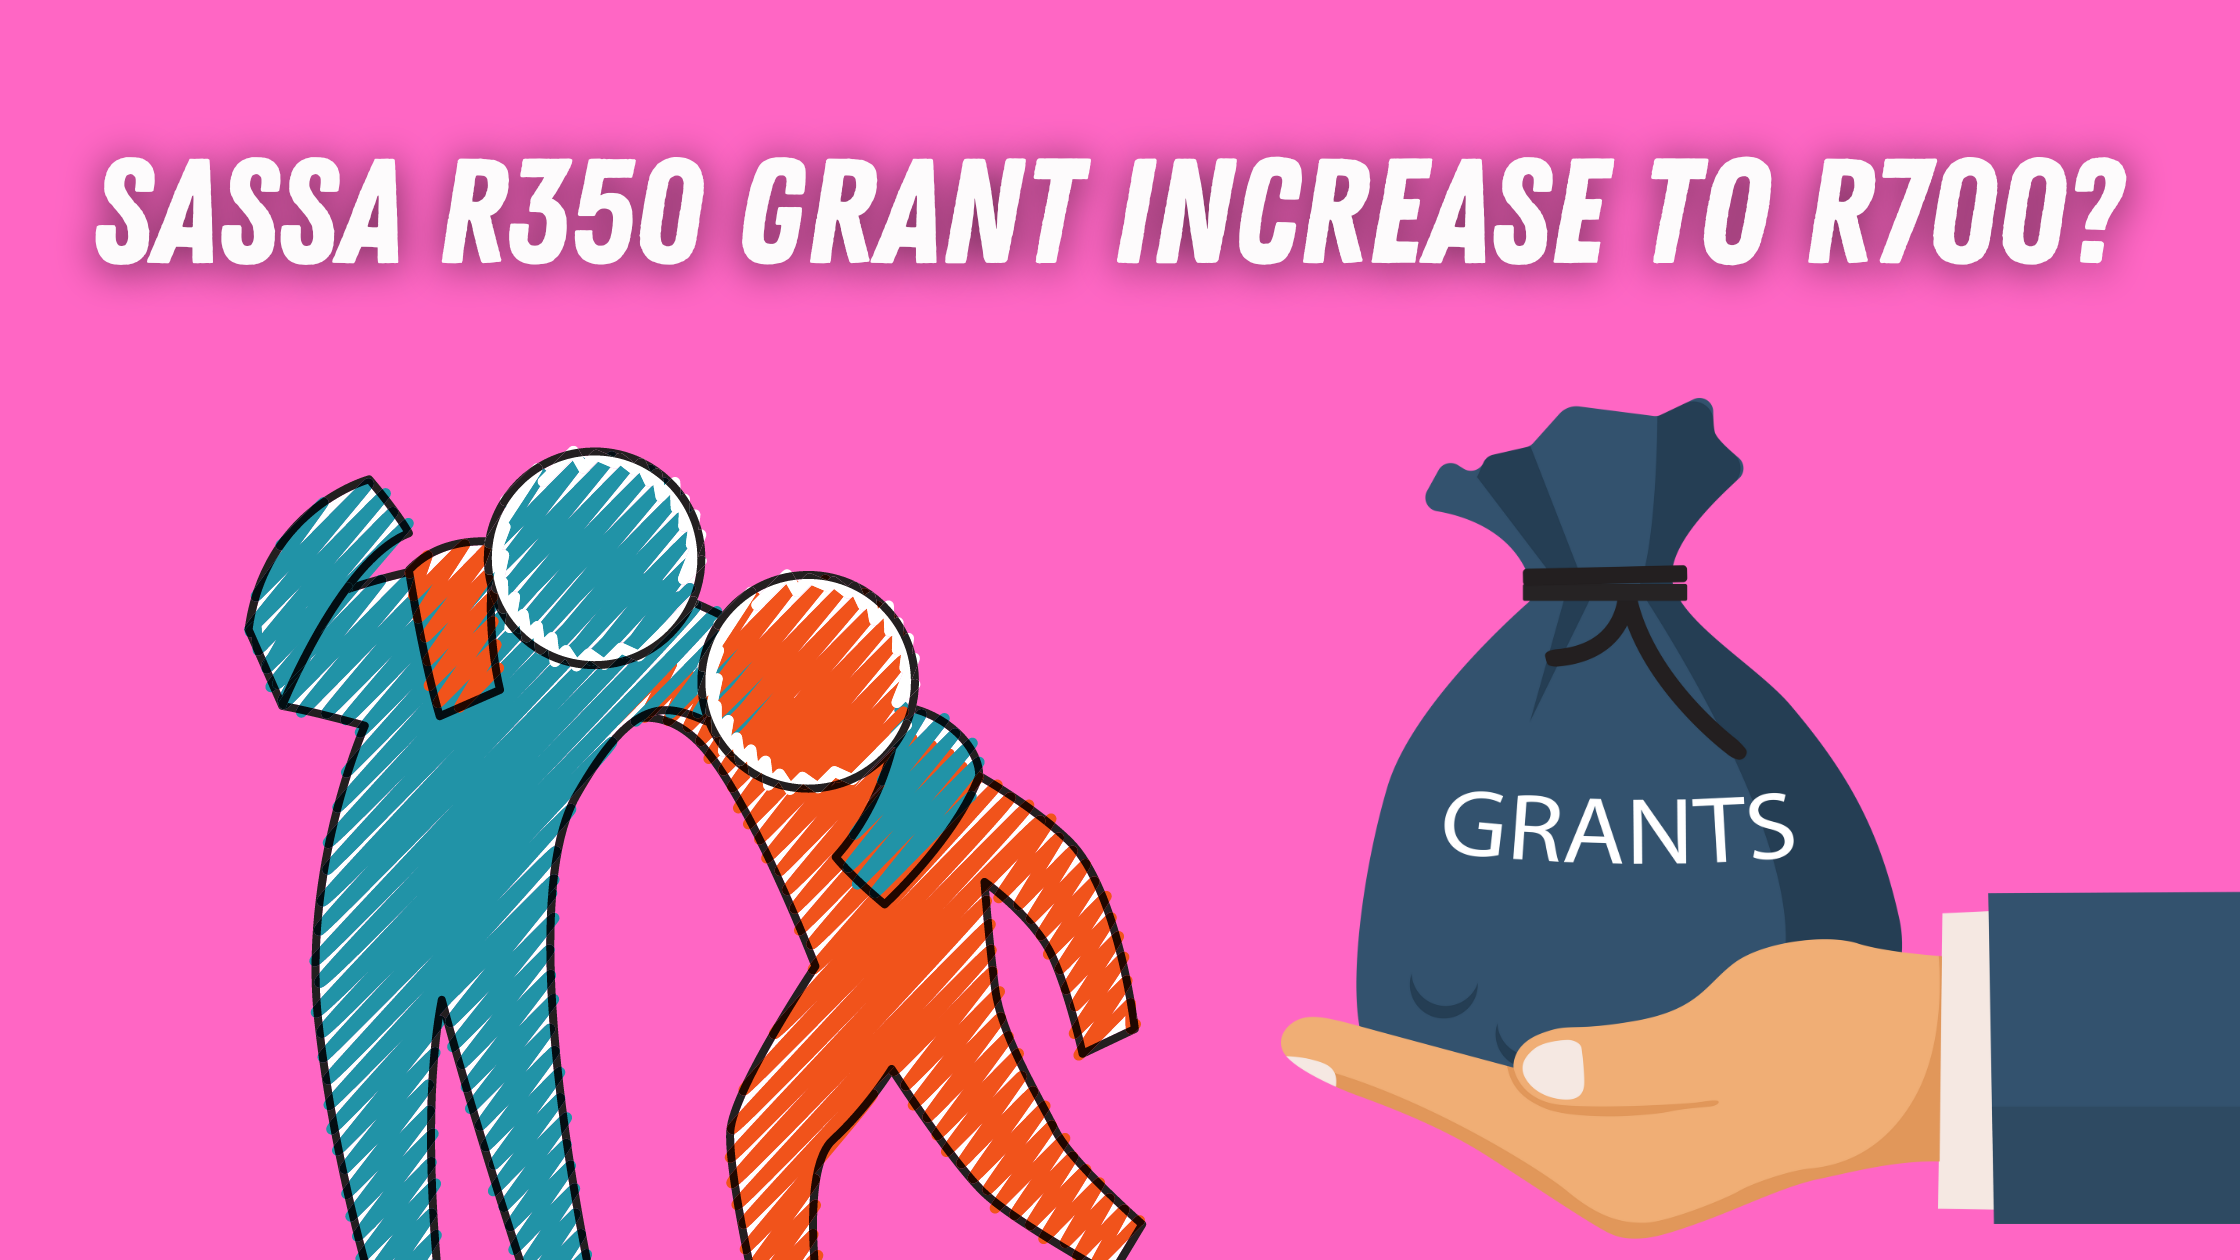 SASSA R350 Grant increase to R700?